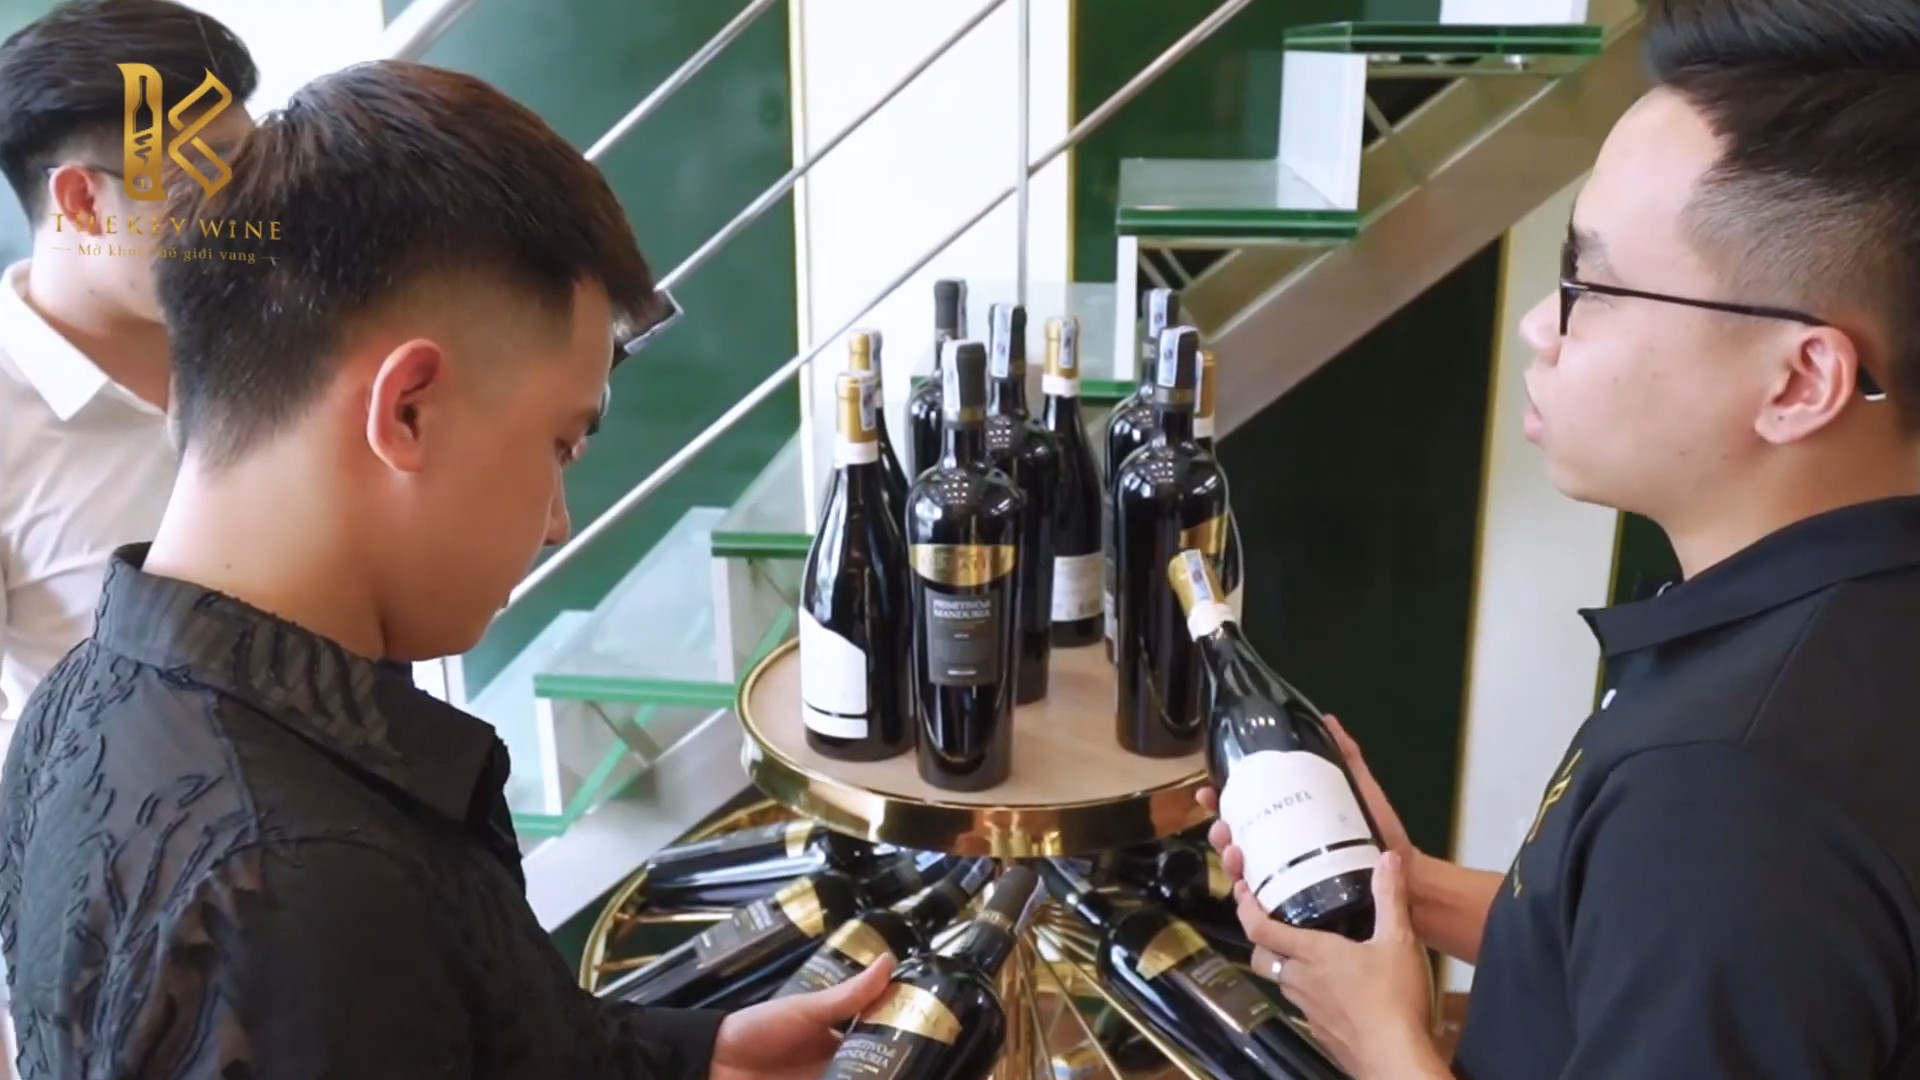 TheKey Wine - Mở khóa thế giới vang, mang sự tinh túy đến với người Việt 4